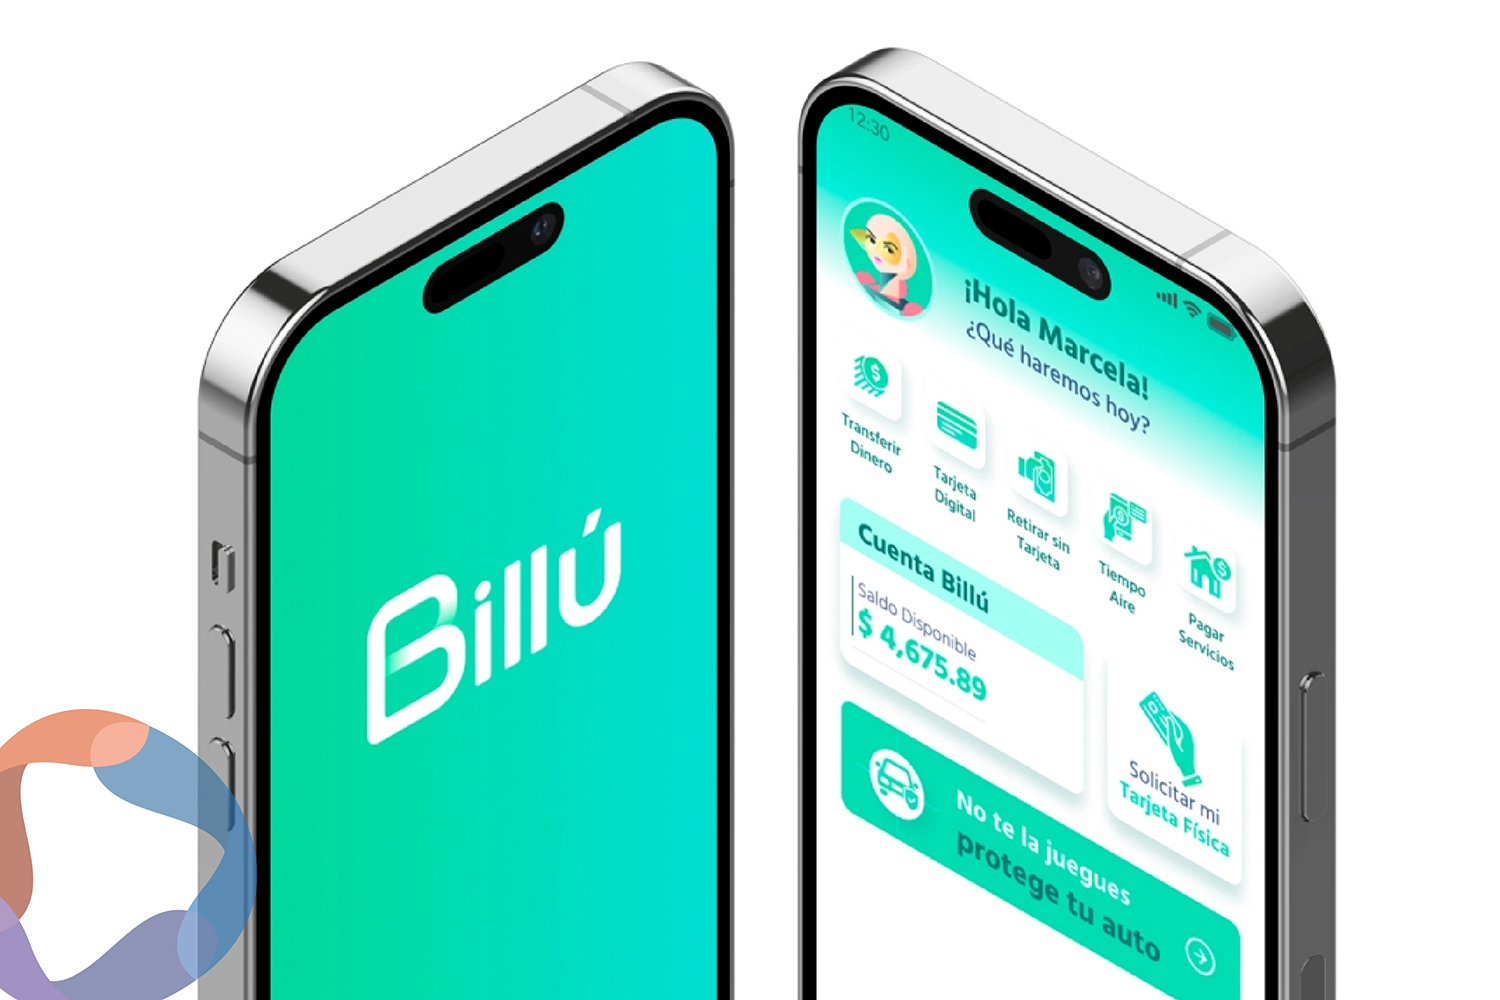 Afirme lanza su banco digital: Billú ya está disponible en tiendas de apps